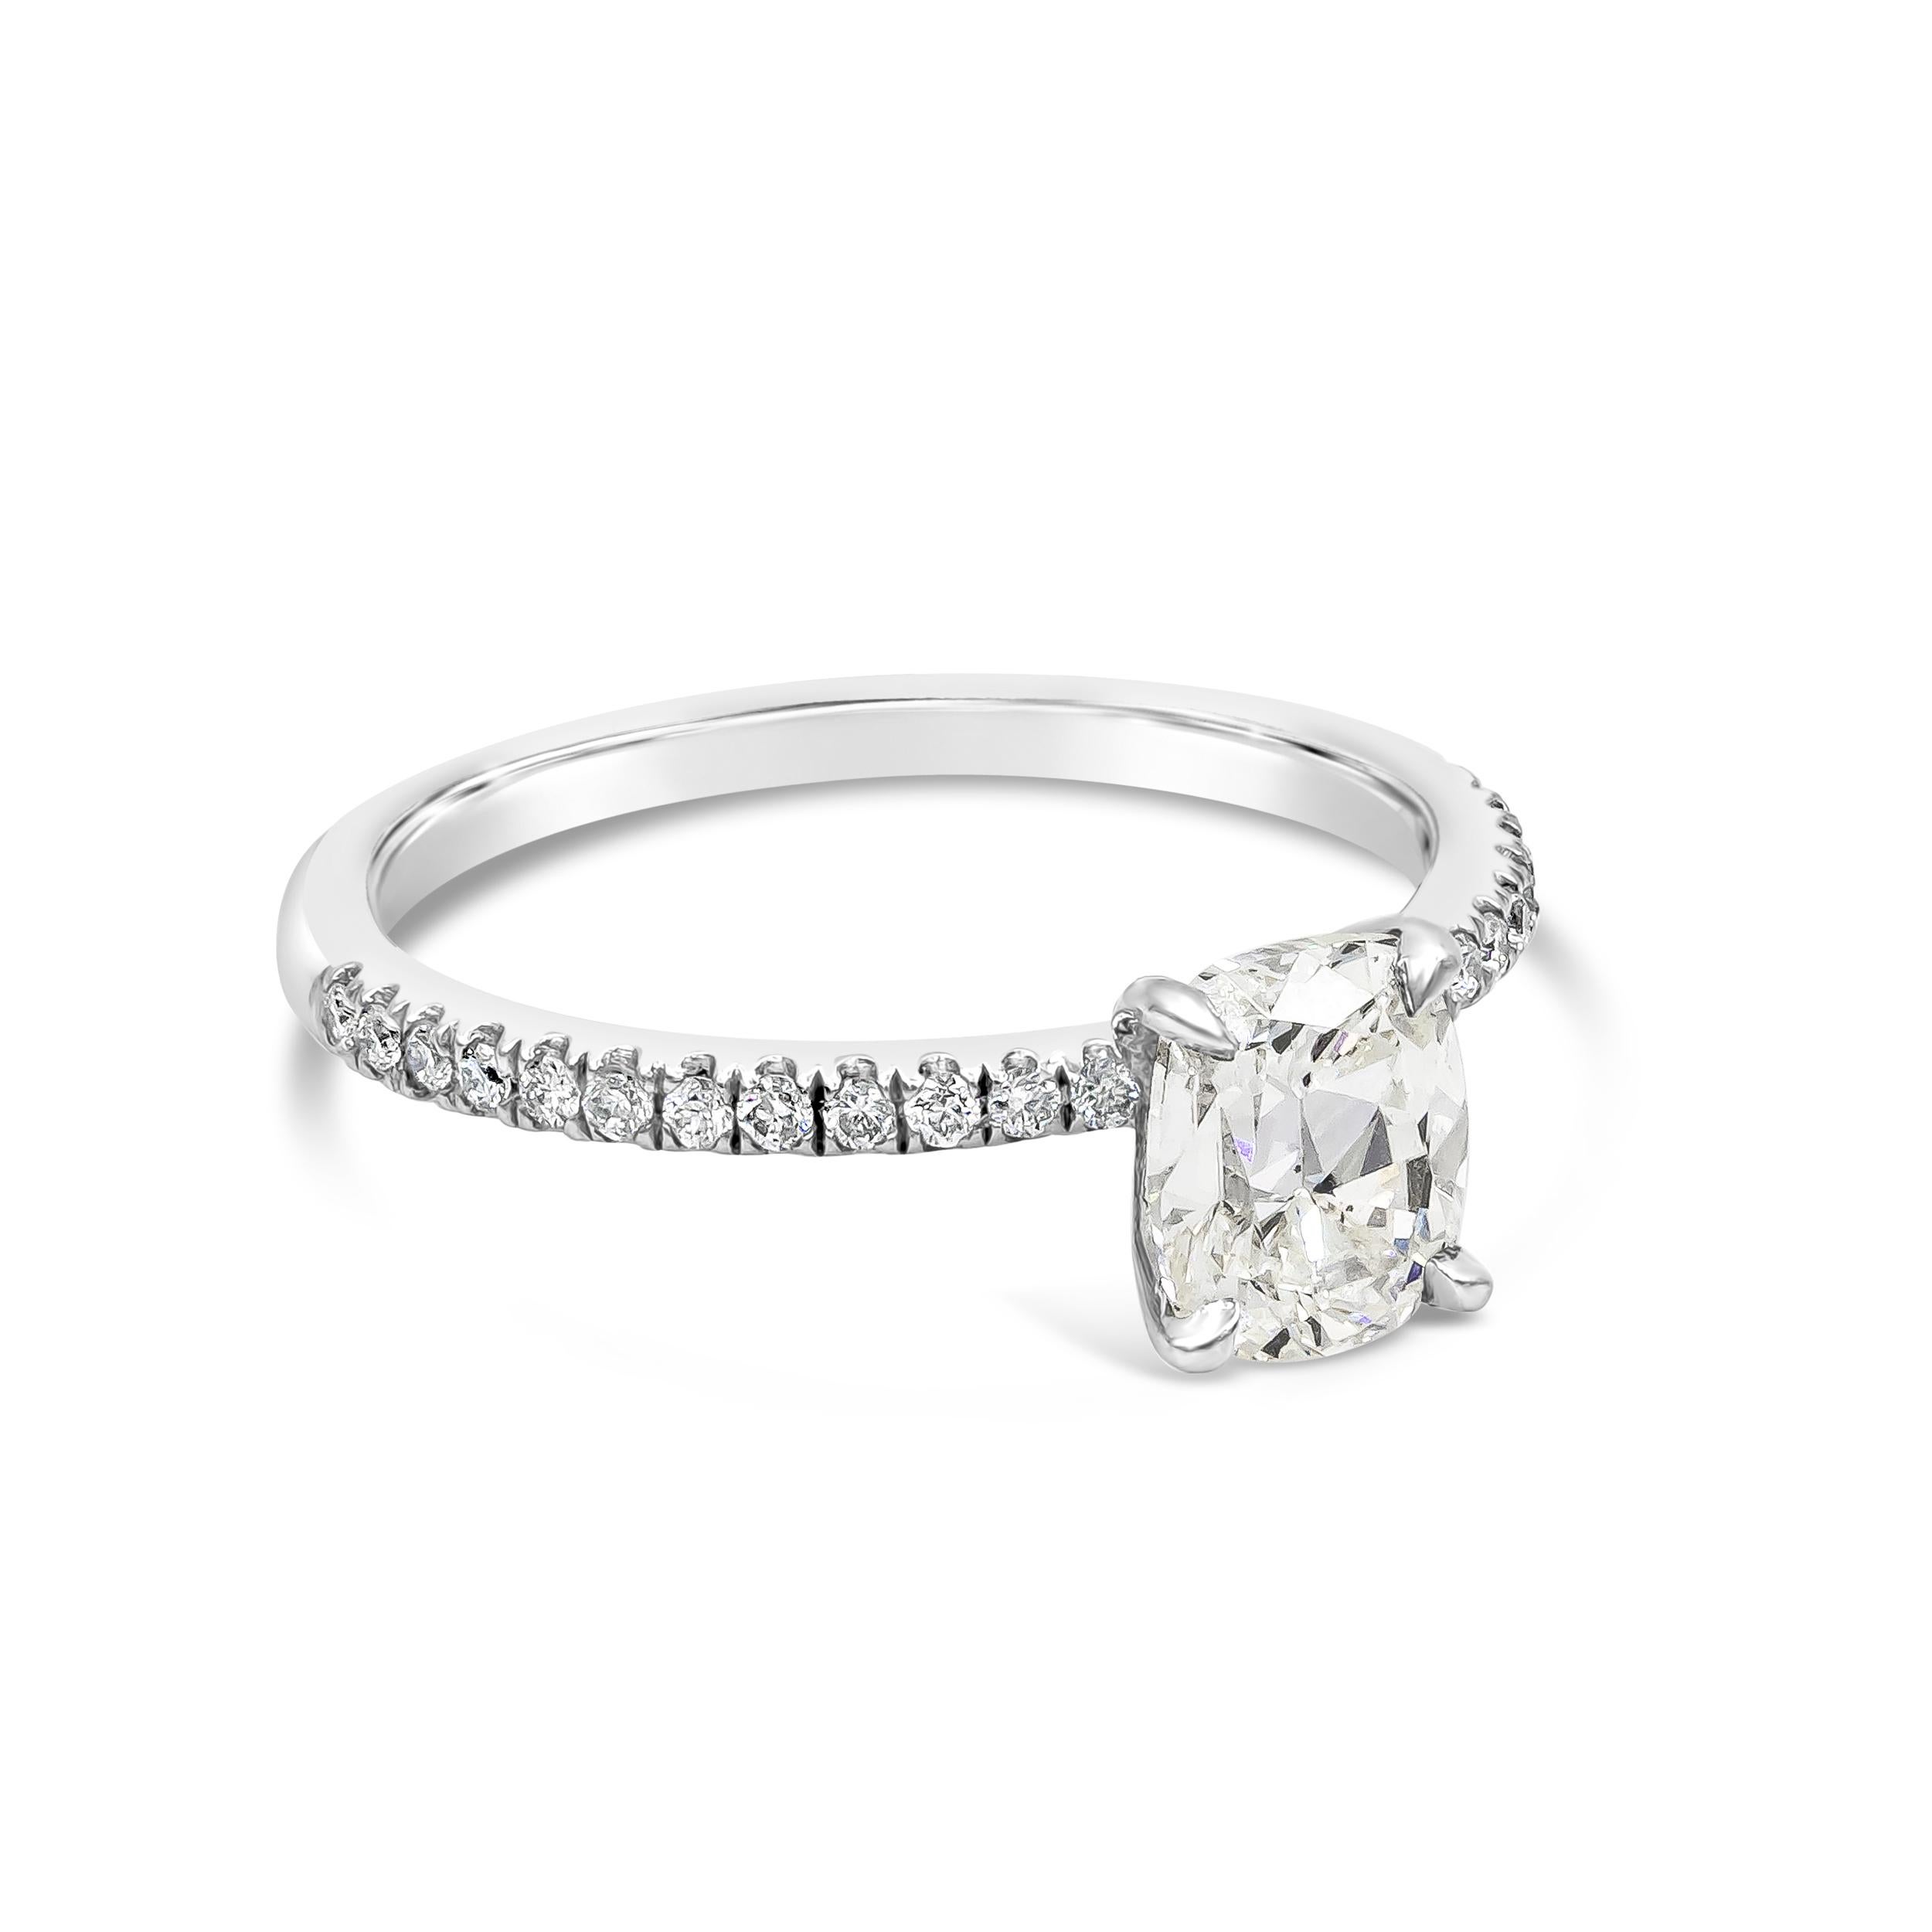 Une bague de fiançailles classique mettant en valeur un diamant taille coussin de 1,10 carats certifié par EGL de couleur J et de pureté SI1, serti dans une monture panier intemporelle à quatre griffes. Le diamant central est serti dans un anneau de